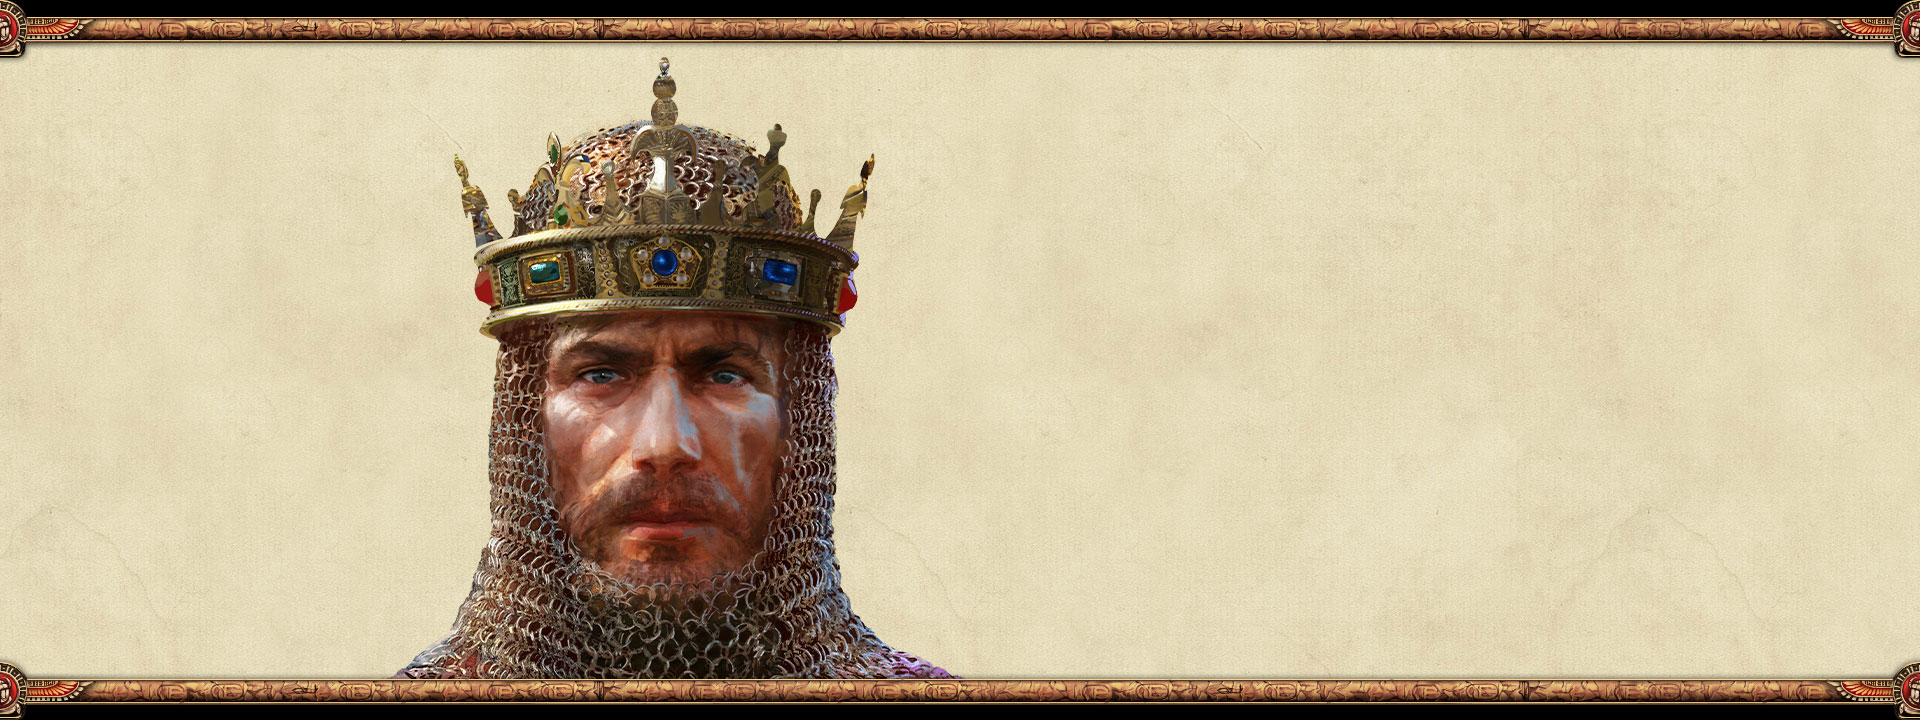 O governante de um império com cota de malha e uma coroa